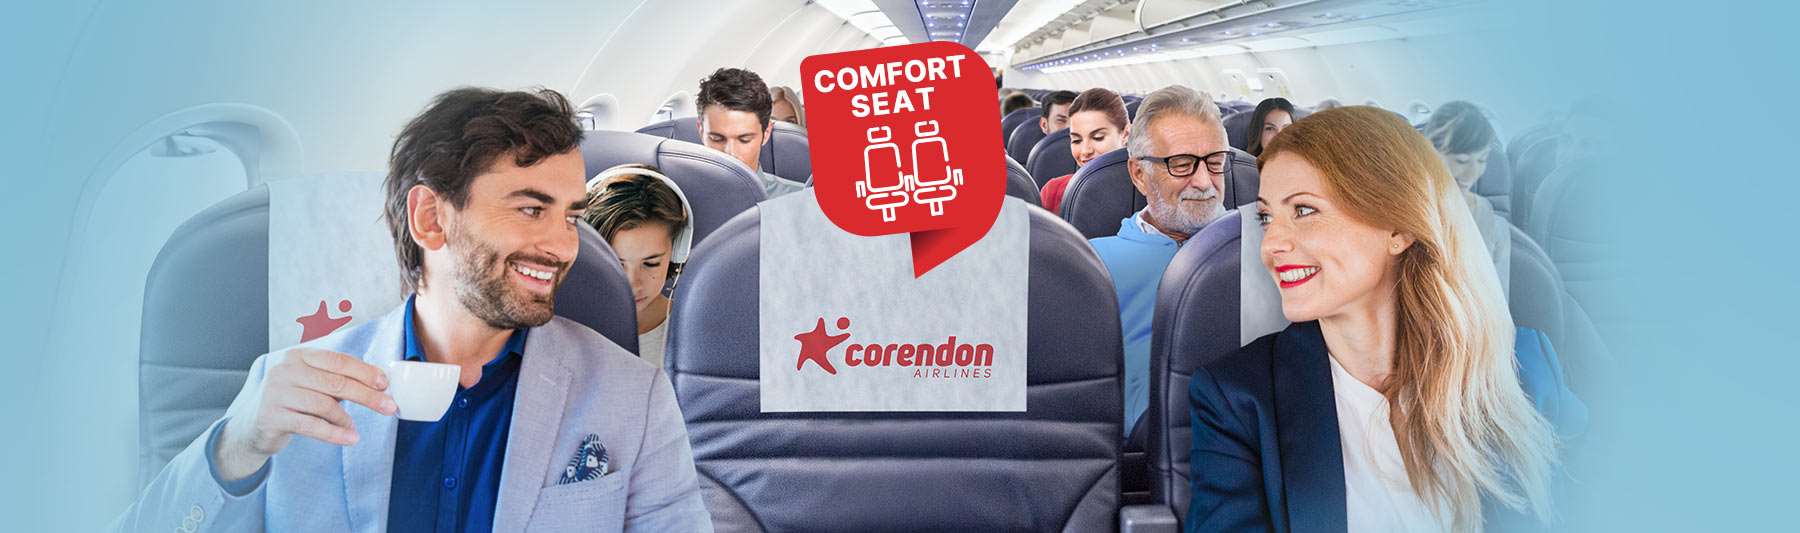 Ga voor extra gemak met onze 'Comfort seats'